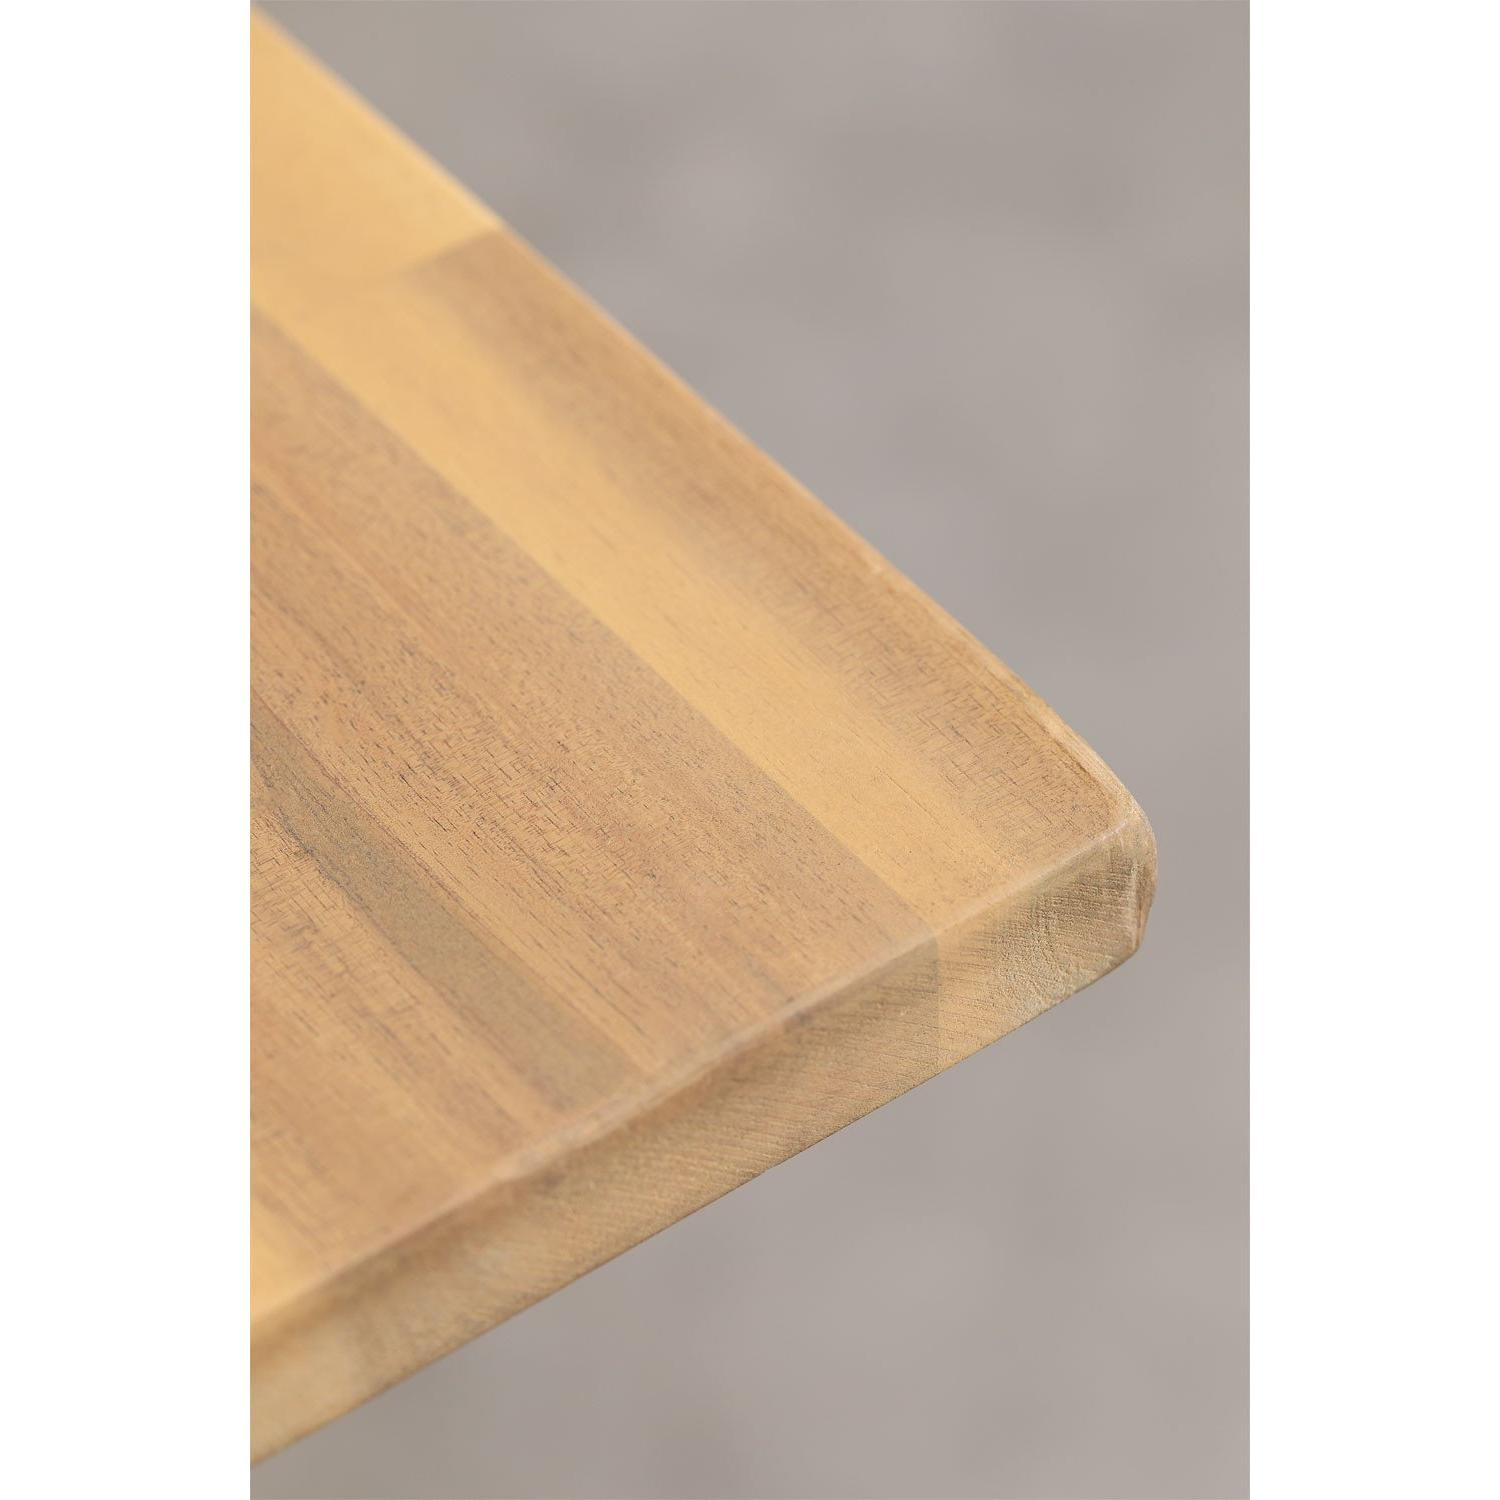 Lauko stalas MONICA, akacijos mediena, juodos kojos, 160x90 cm